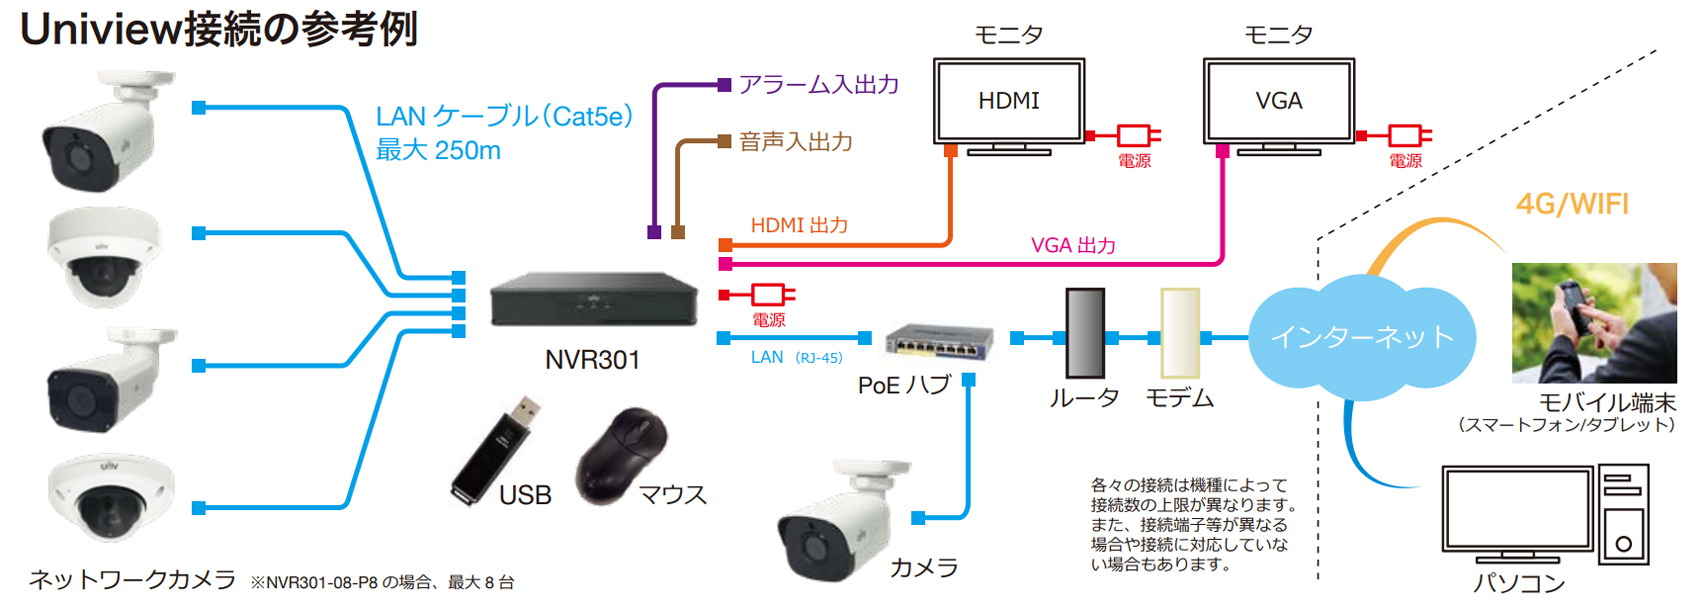 NVR301-04X-P4 システム接続例